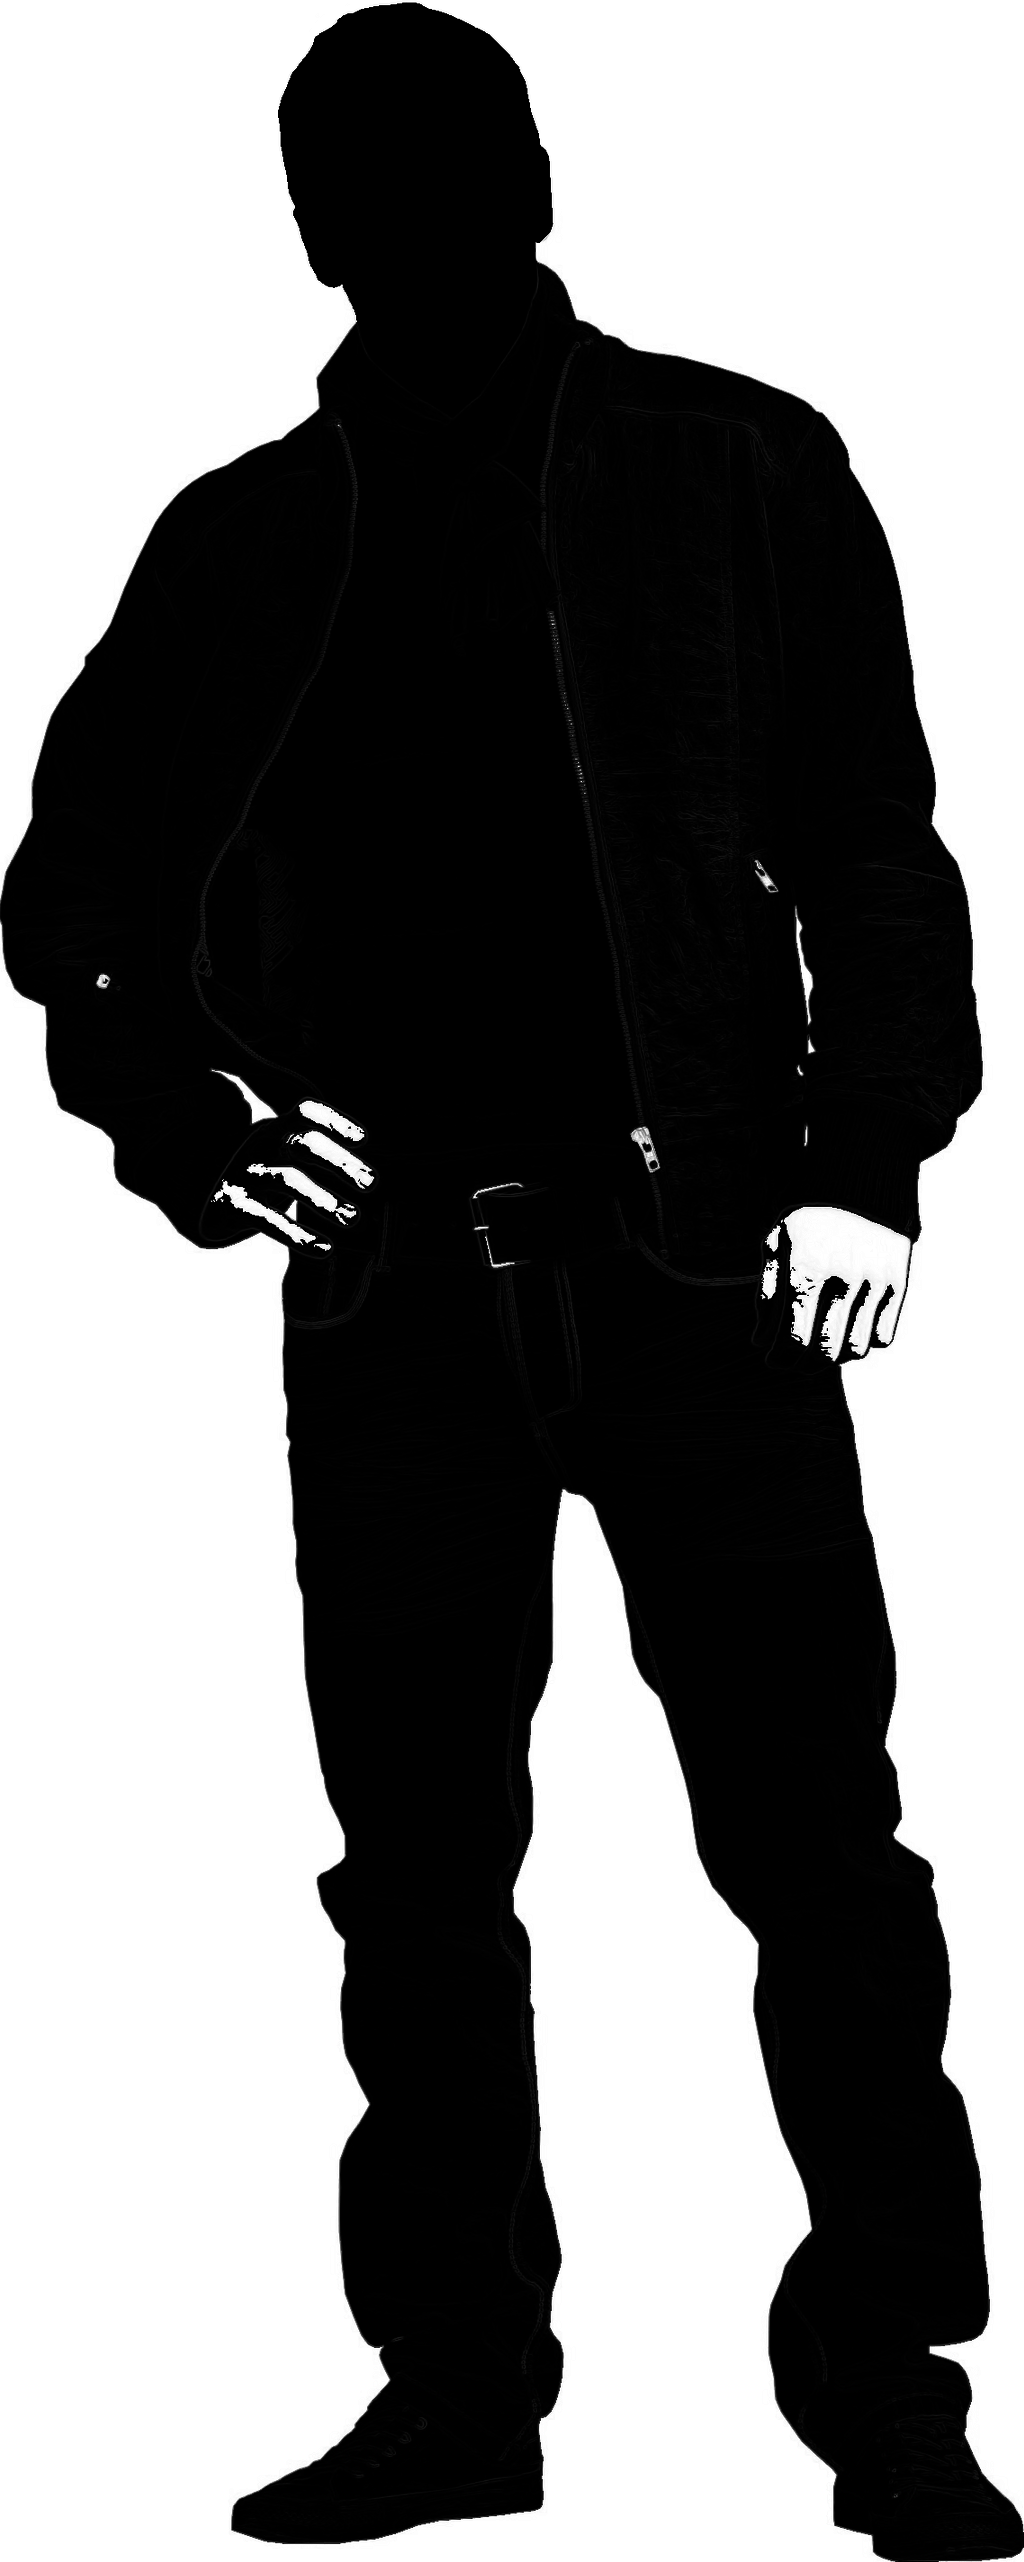 Male silhouette by seremela05 on deviantART